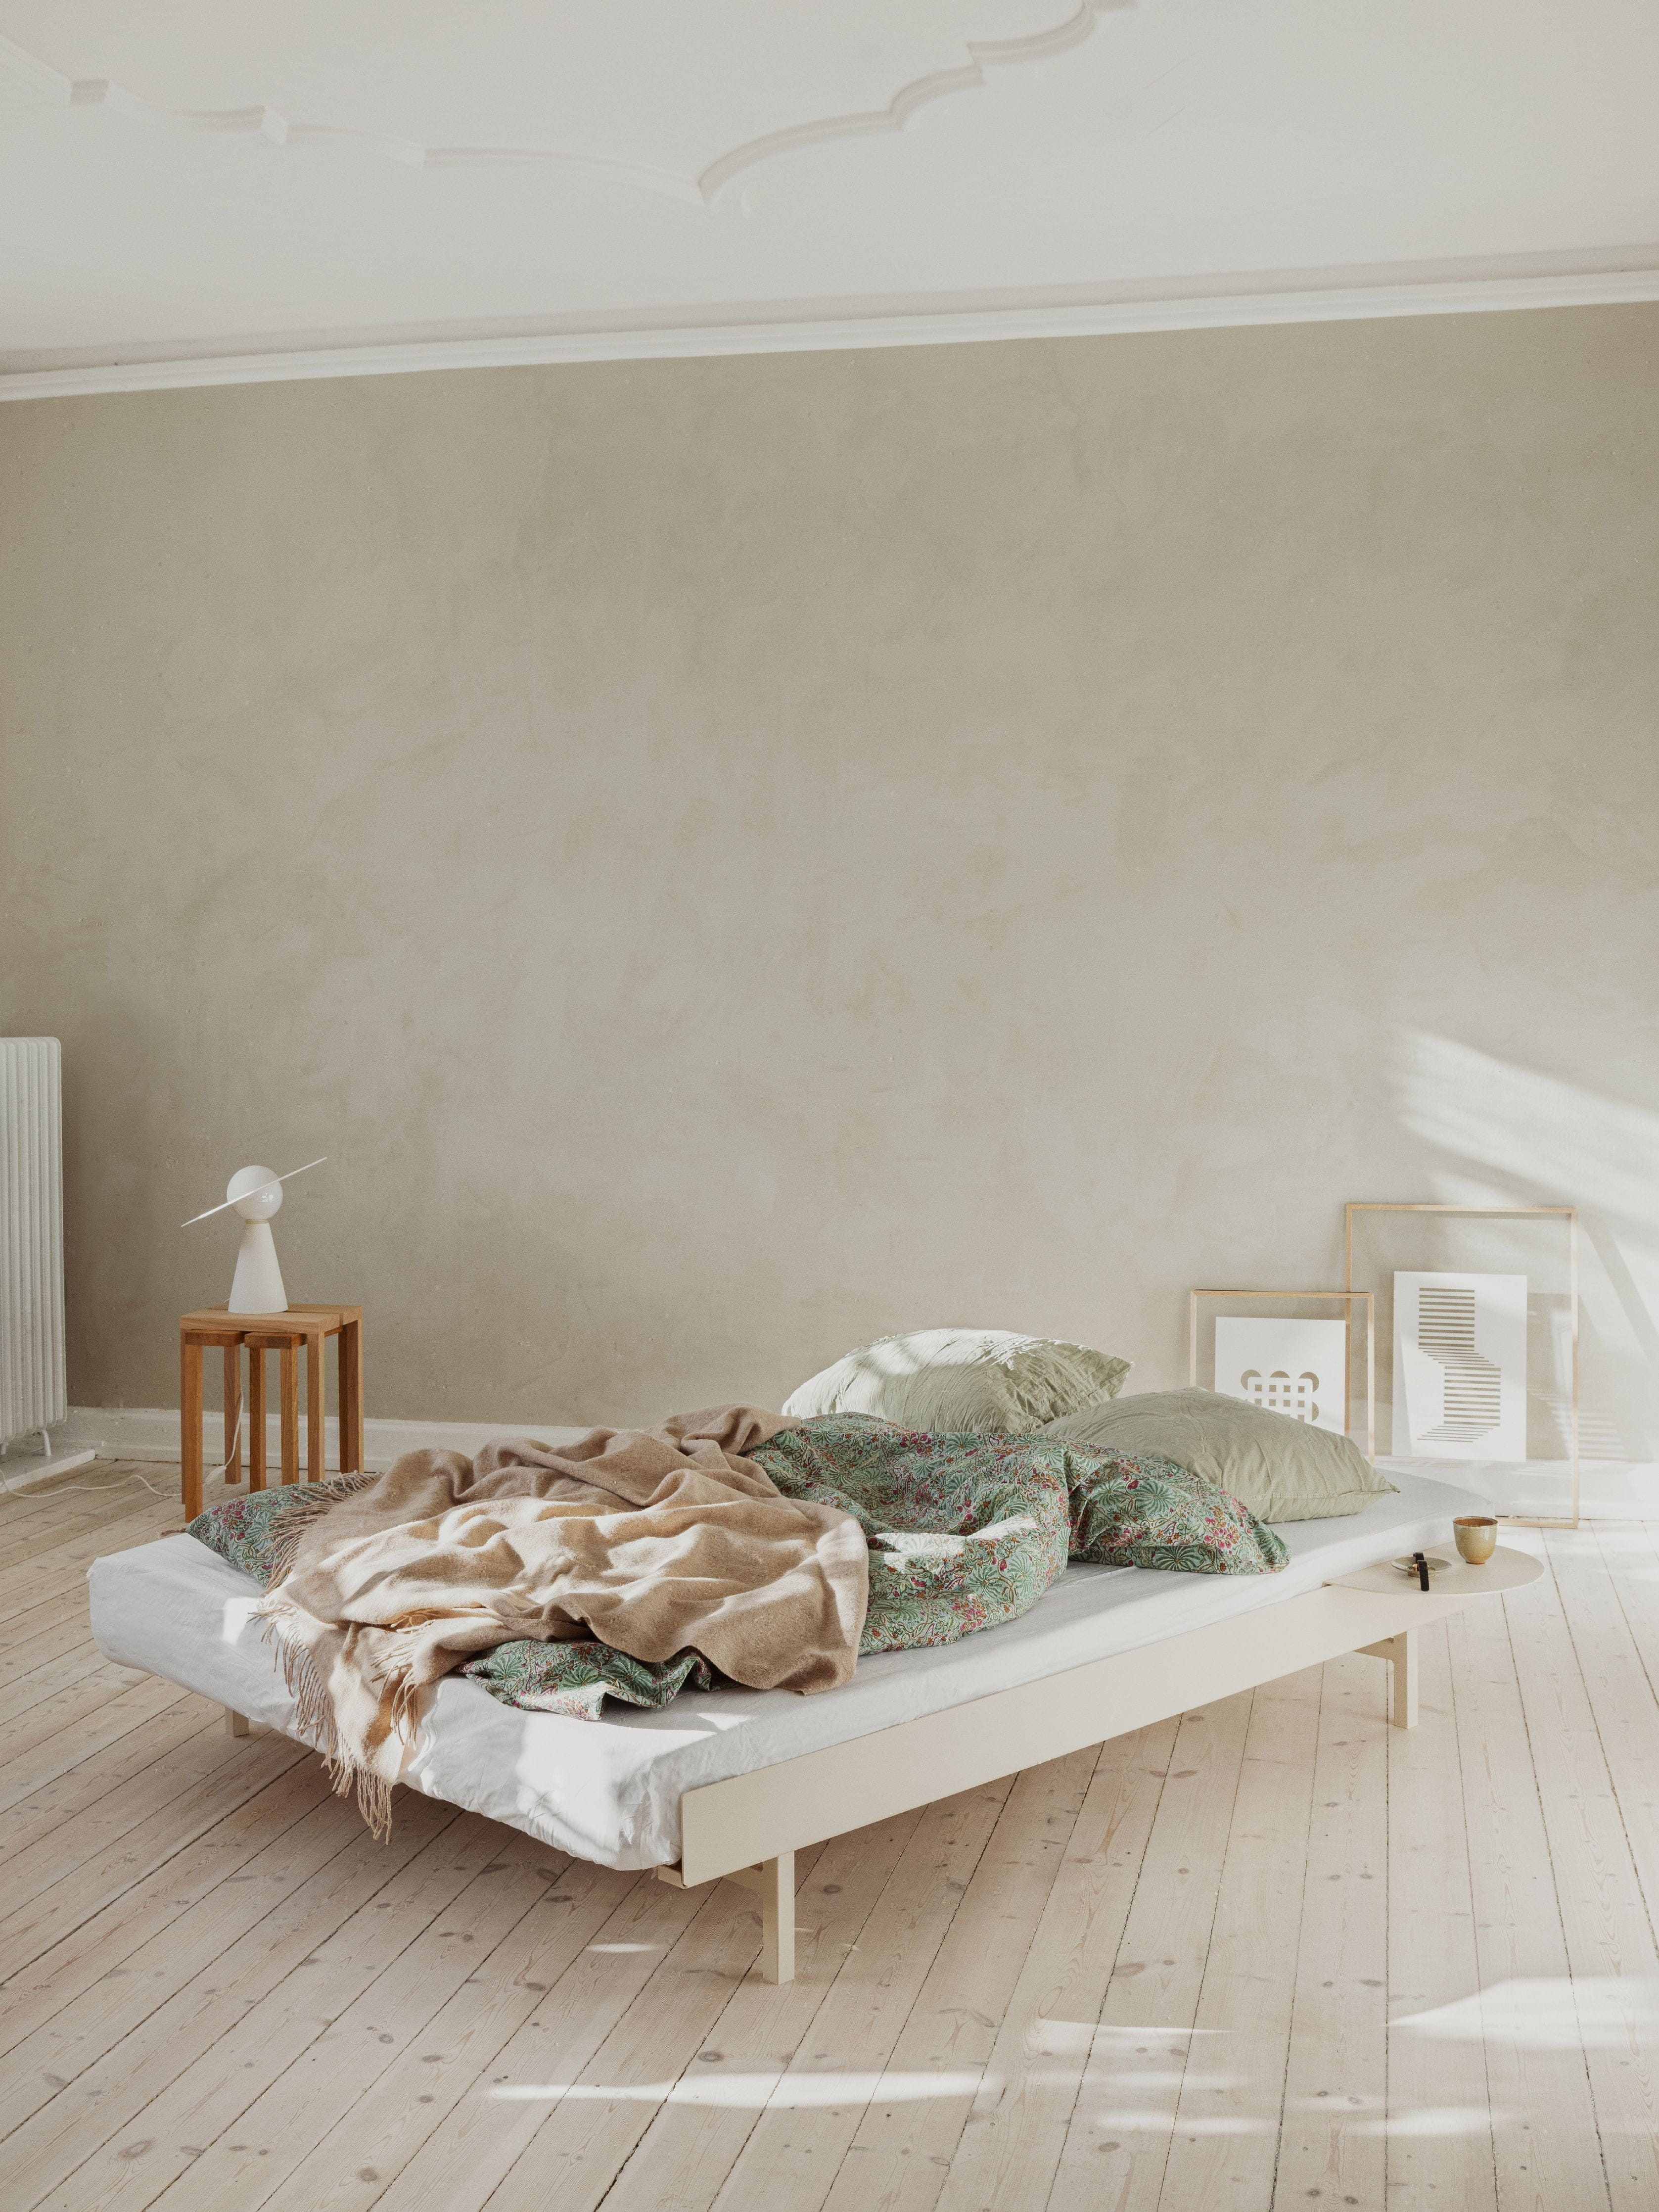 Moebe -säng med lameller och 2 sängbord 140 cm, sand